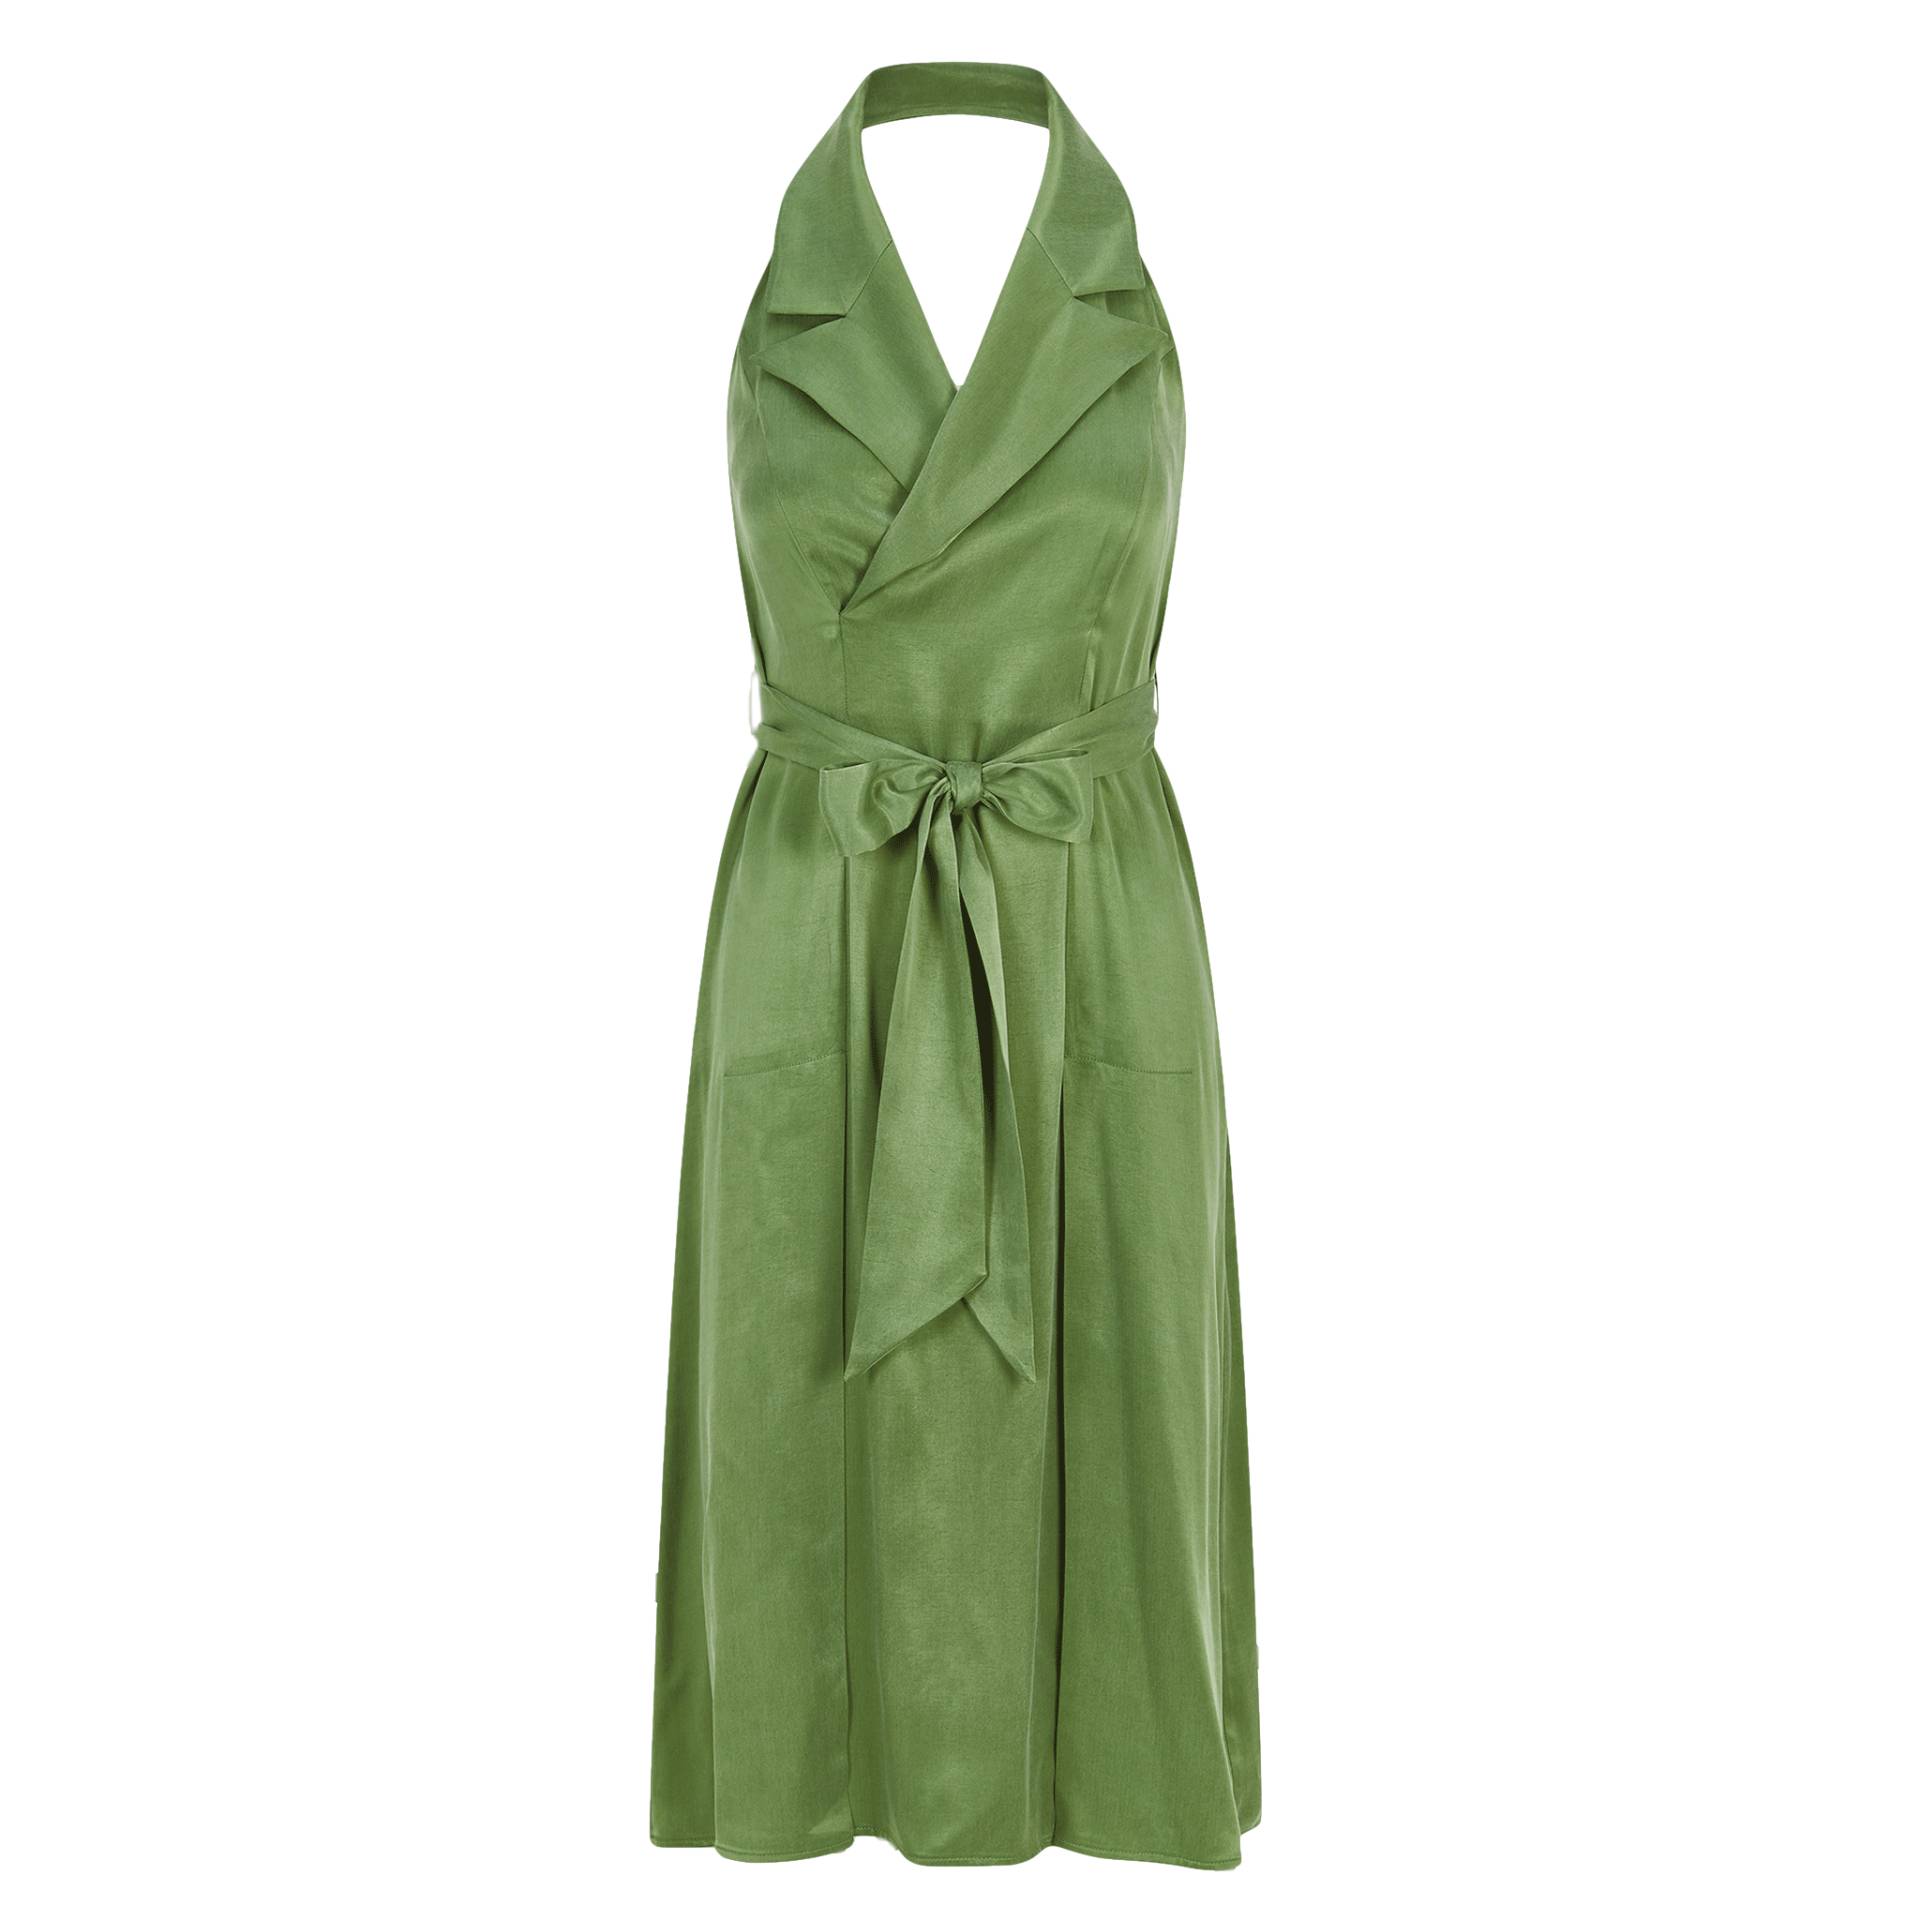 Halter Neck Midi Tuxedo Dress (Avocado Green) von Femponiq